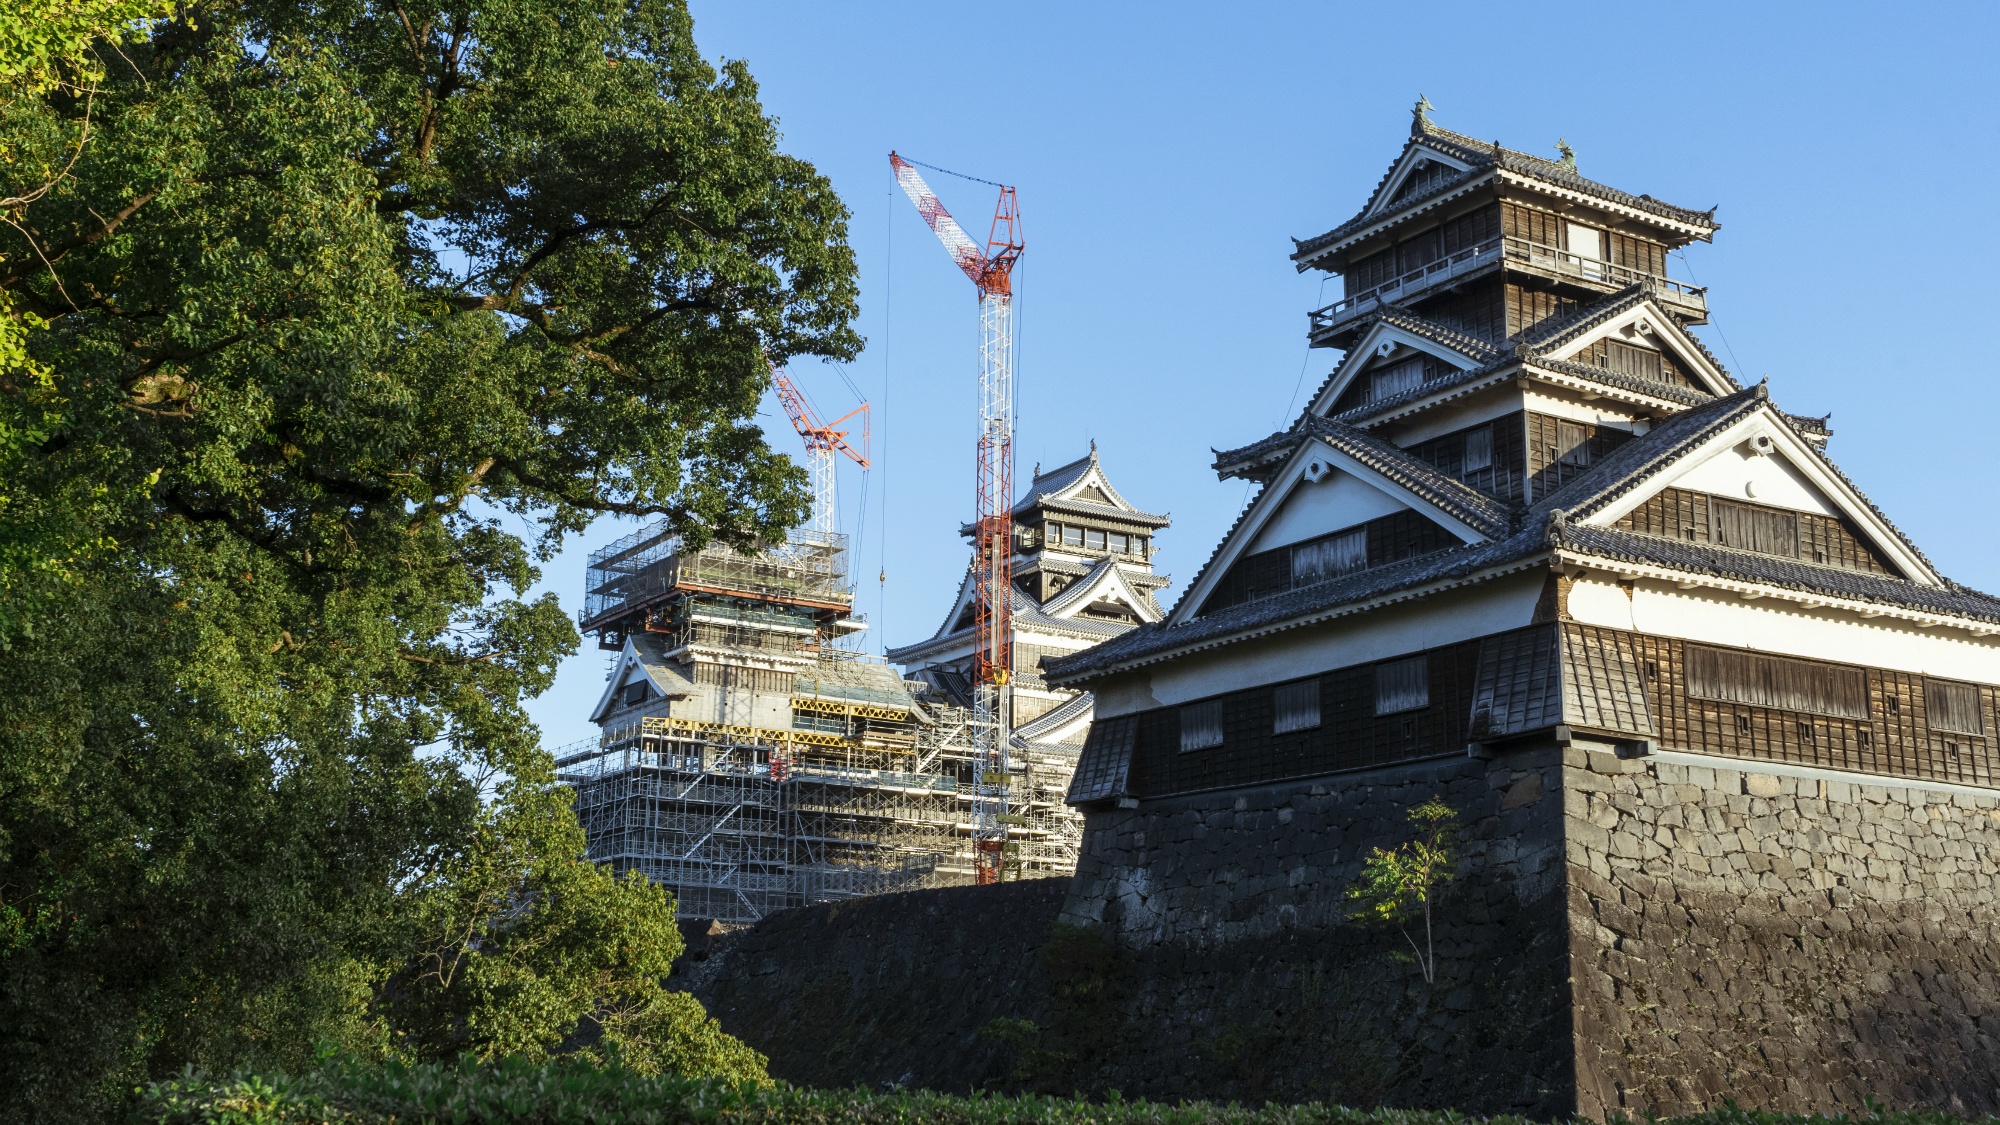 熊本城へは当館よりお車で約15分。徐々に特別見学通路も増え、より近くで熊本城を感じることができます。